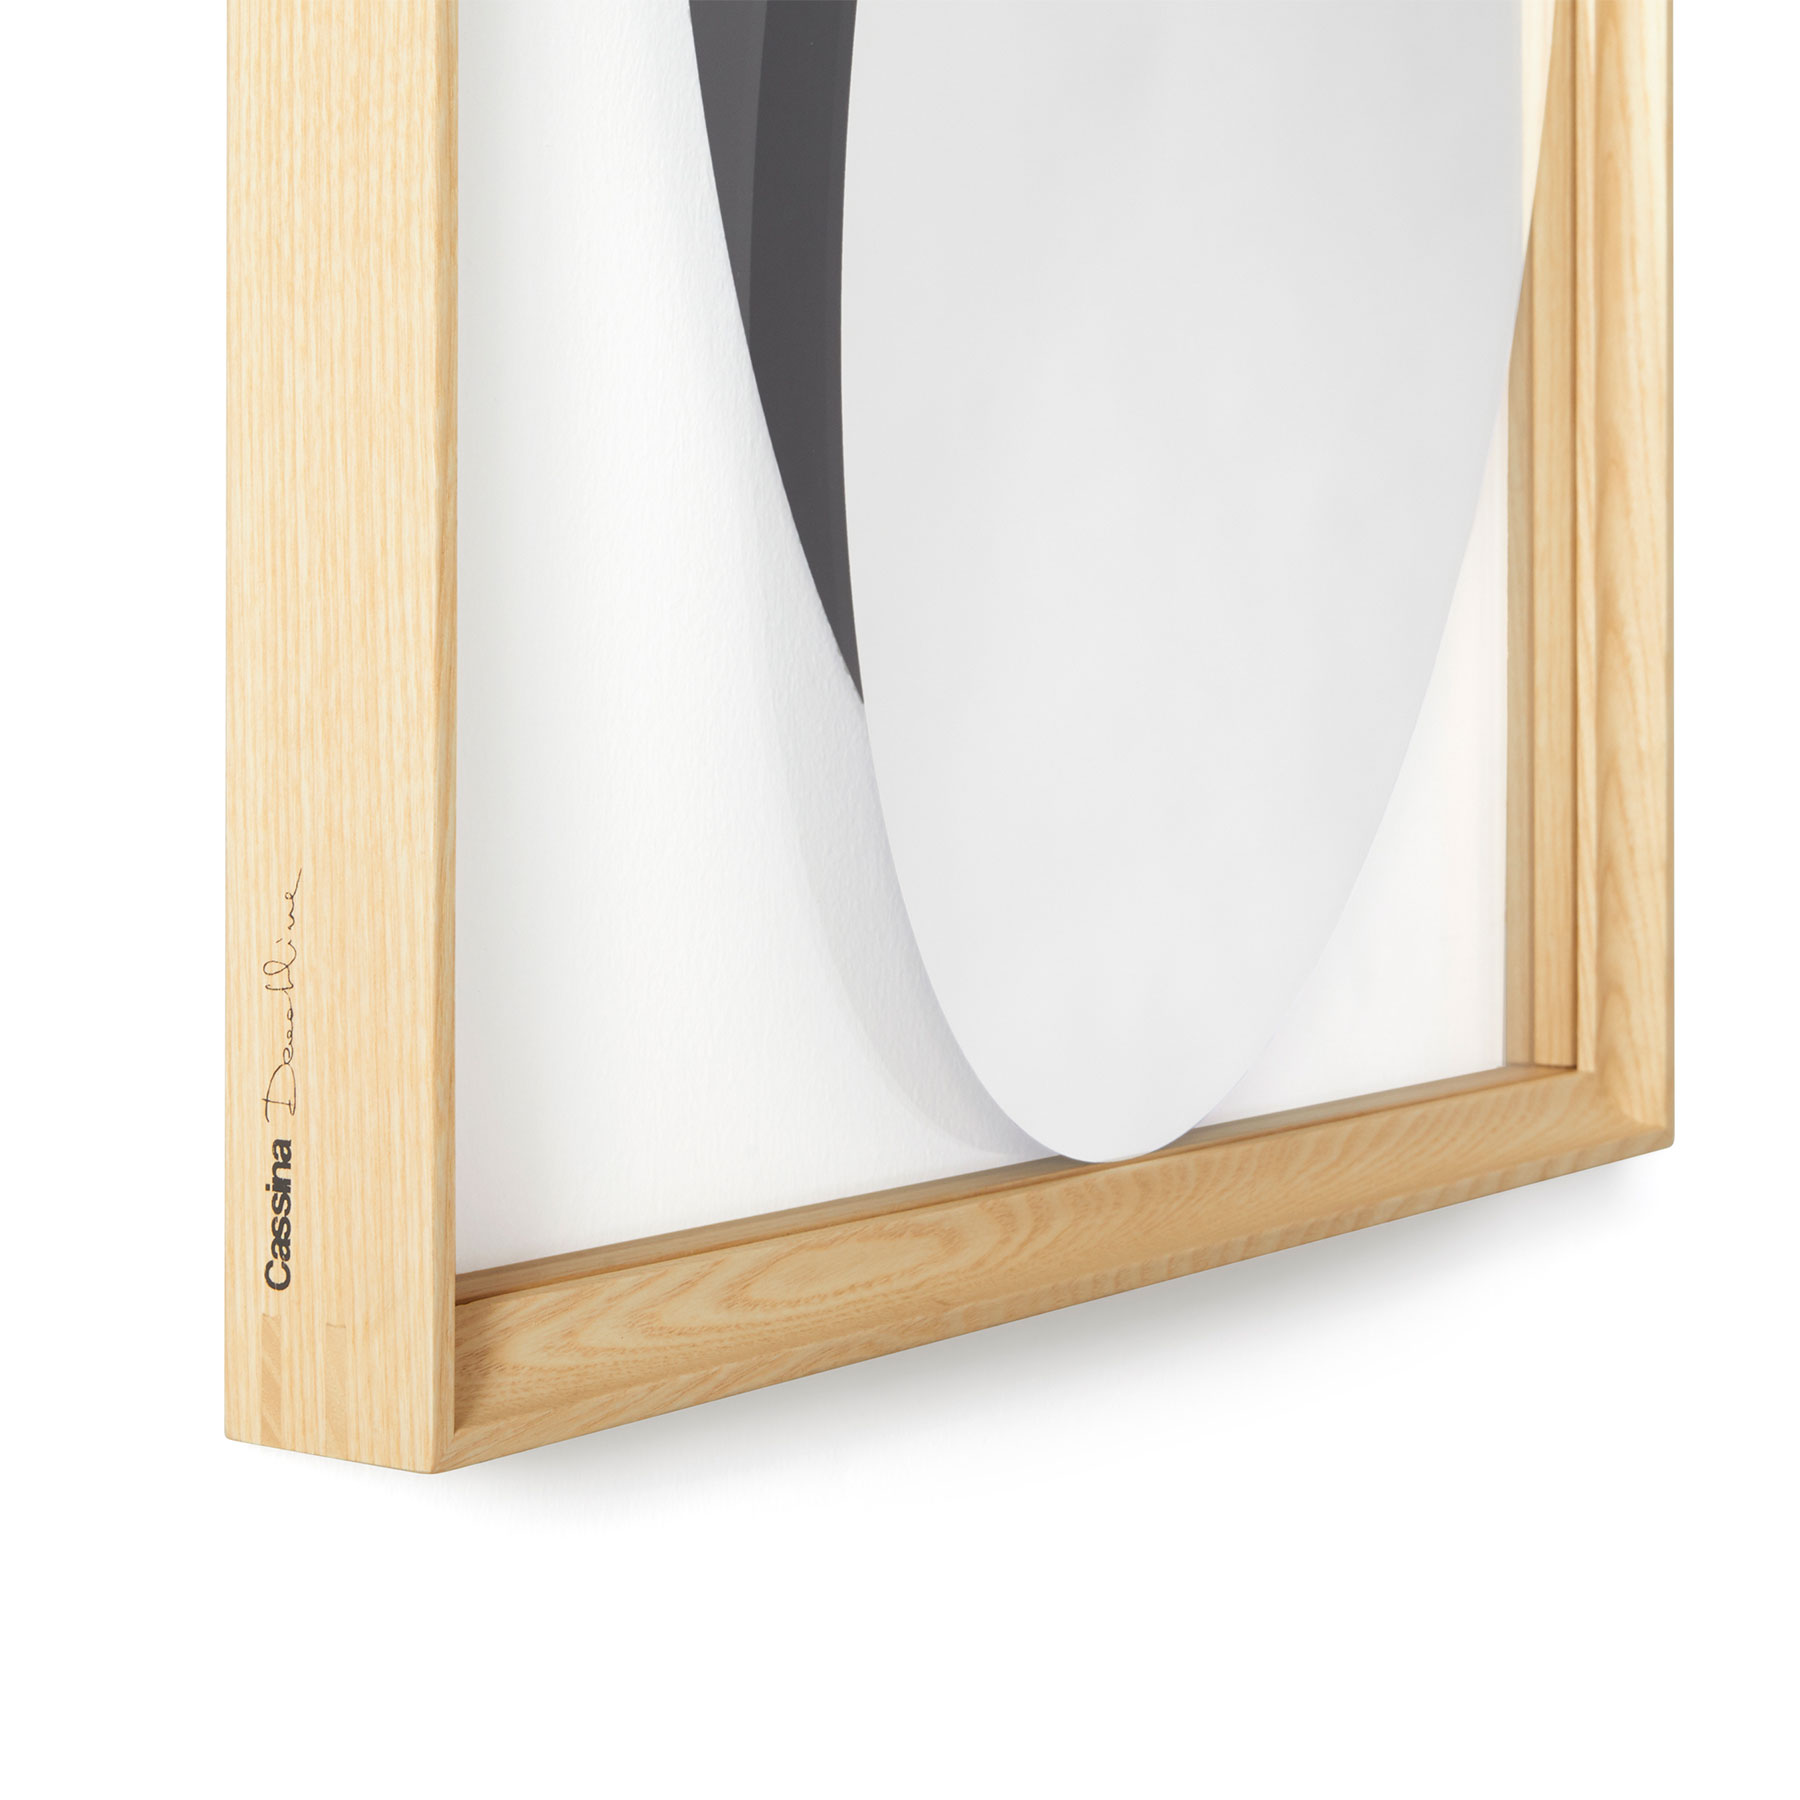 Spiegel Deadline 31 Rahmen Esche Natur 40 x 170 cm